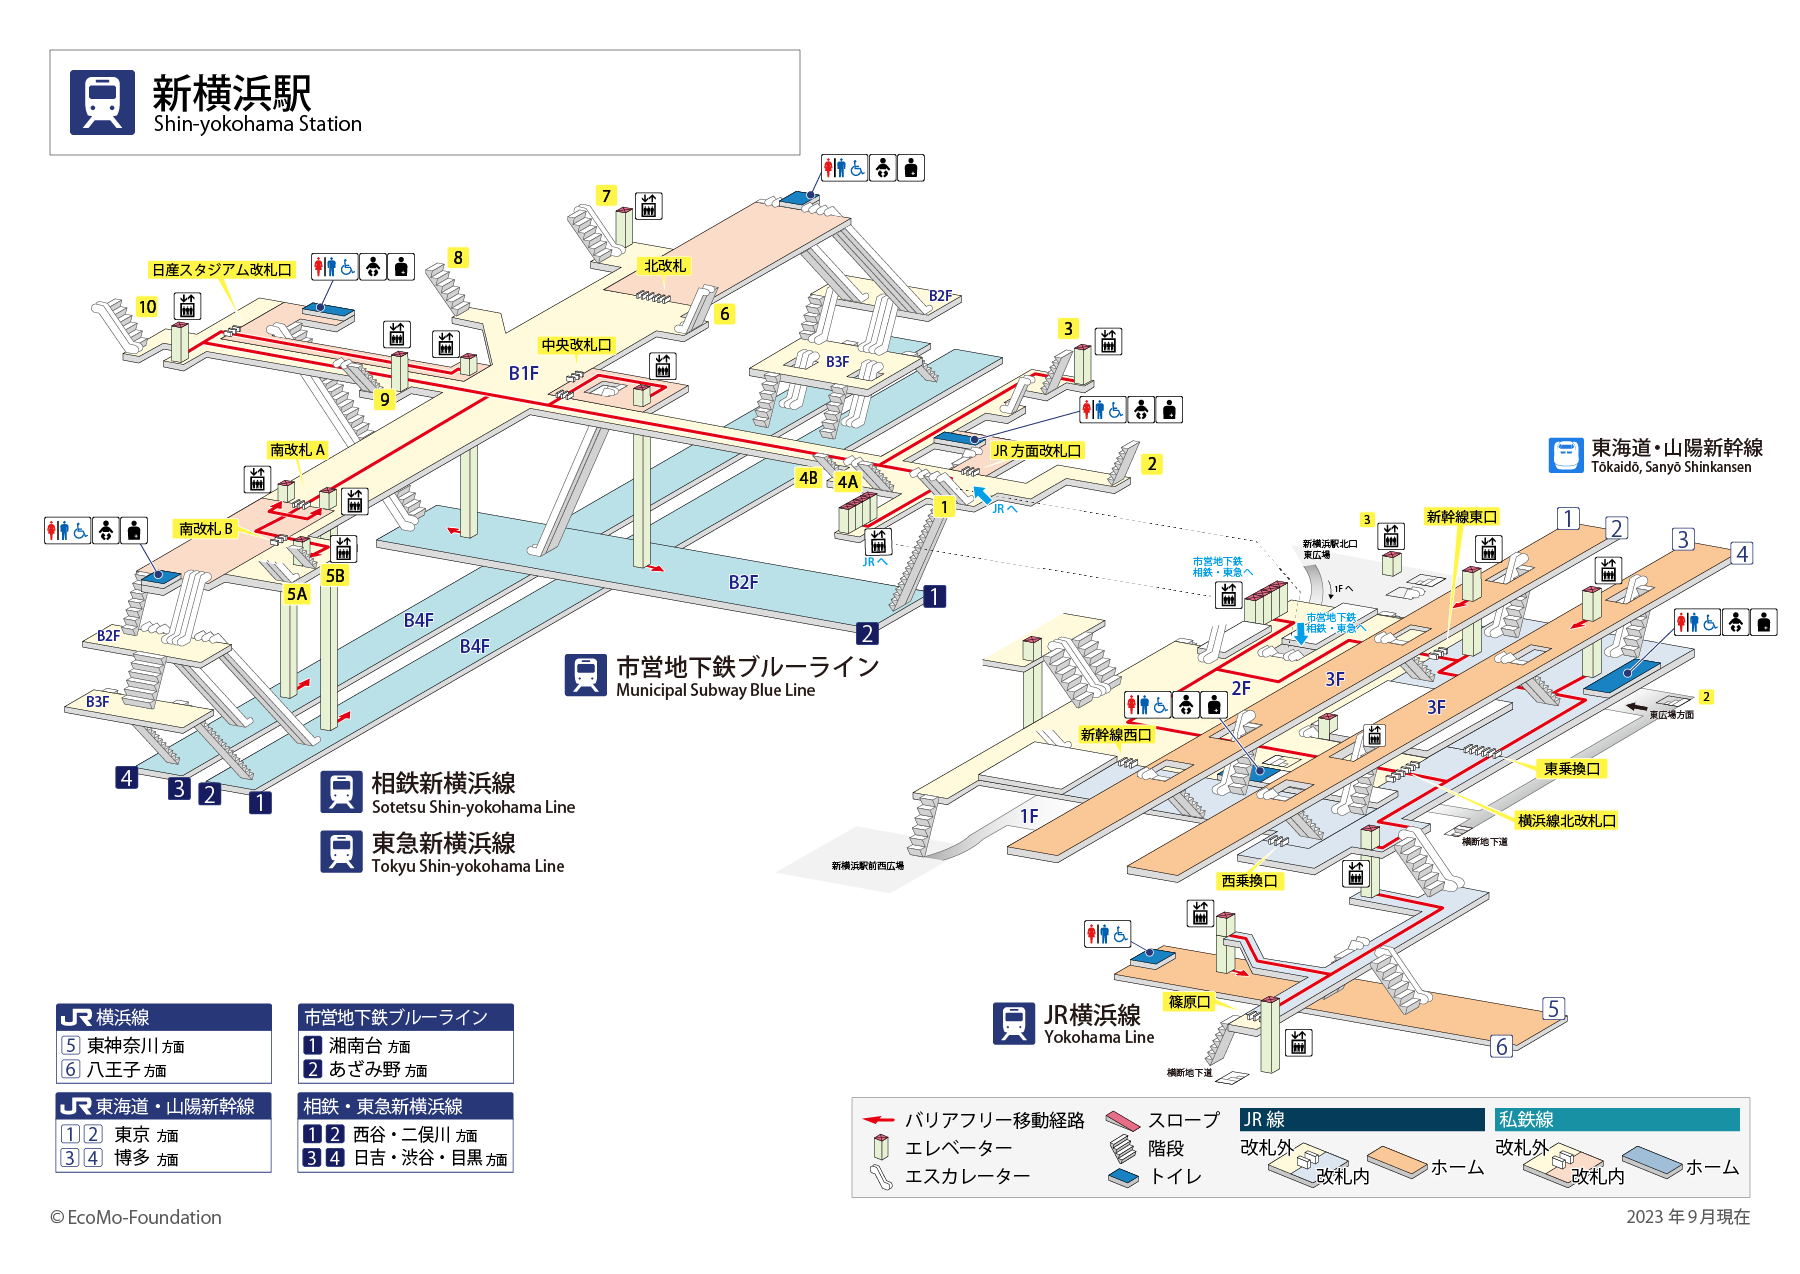 [{'s_sta_name': '新横浜', 's_r_sta_name': 'Shin-Yokohama', 'encode_sta_name': '%E6%96%B0%E6%A8%AA%E6%B5%9C'}]